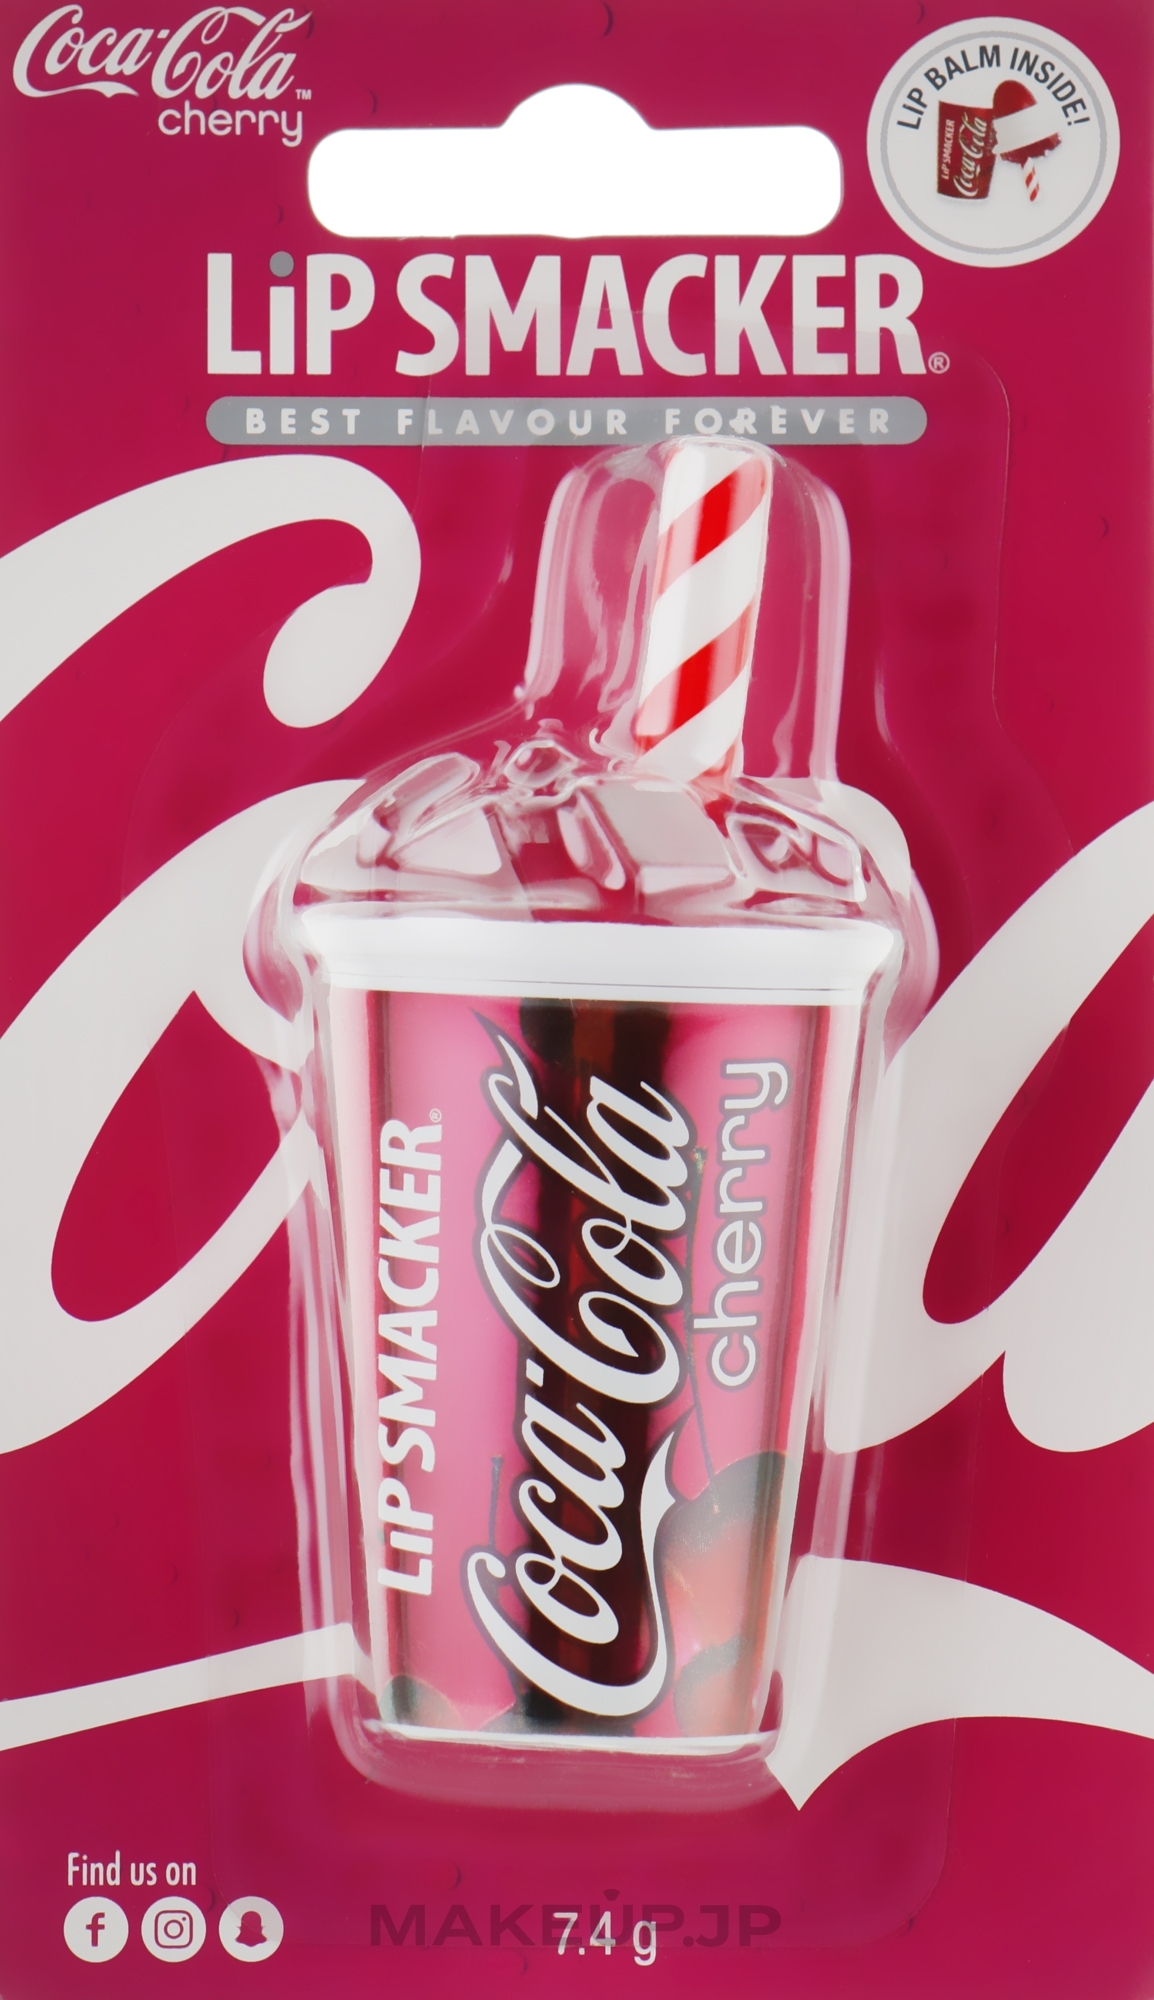 Lip Balm "Coca-Cola Cherry" - Lip Smacker Lip Balm Coca Cola Cherry  — photo 7.4 g